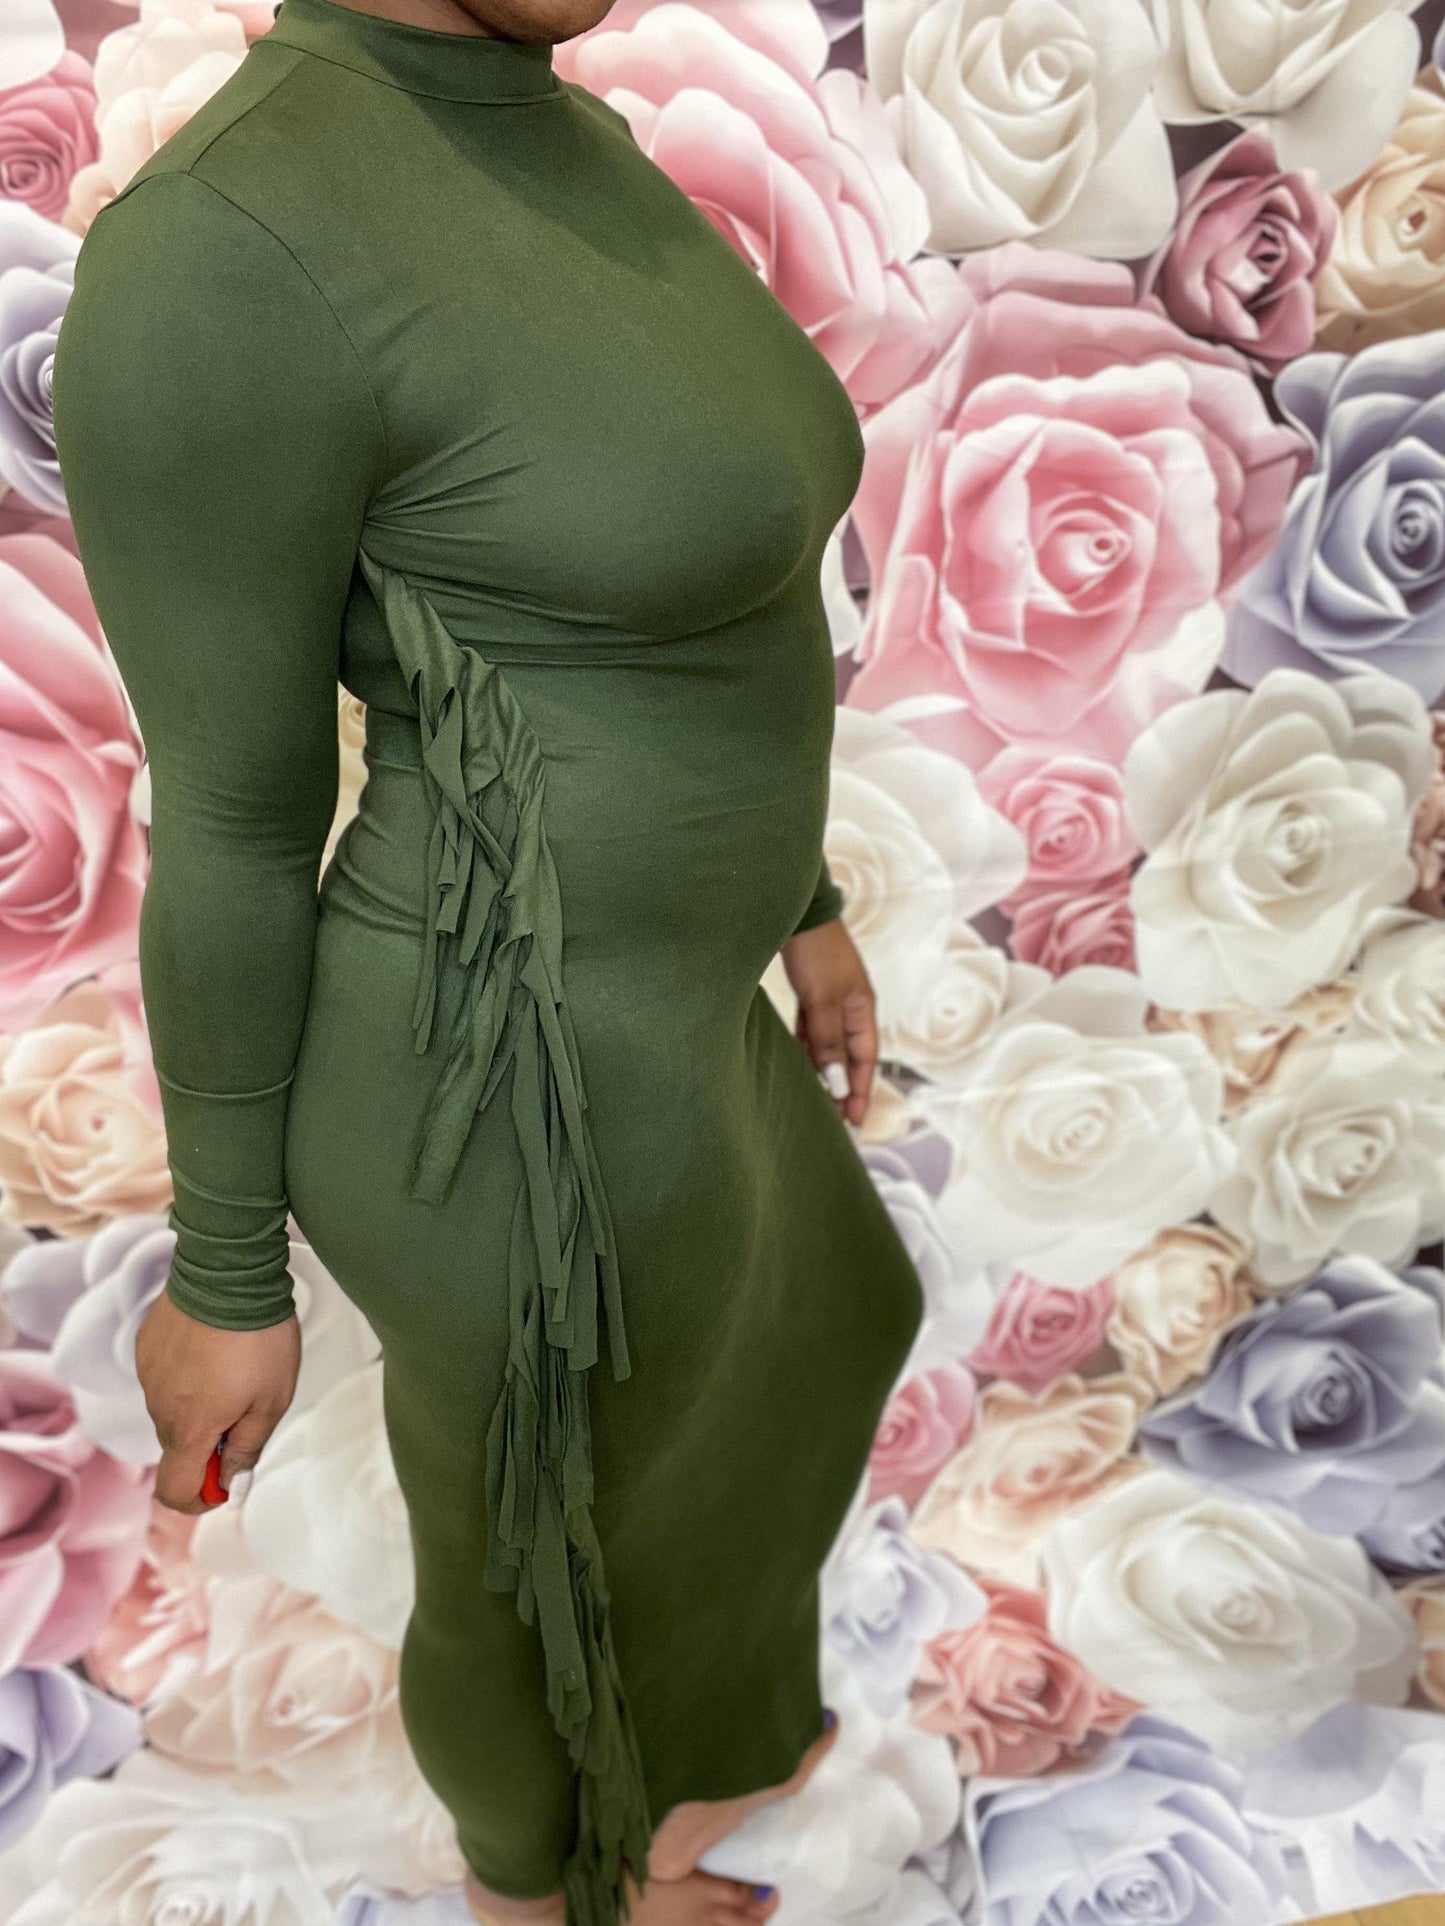 Fringe Maxi Dress-Small-Olive-Abundance Junky Stylish Clothing Boutique for Women